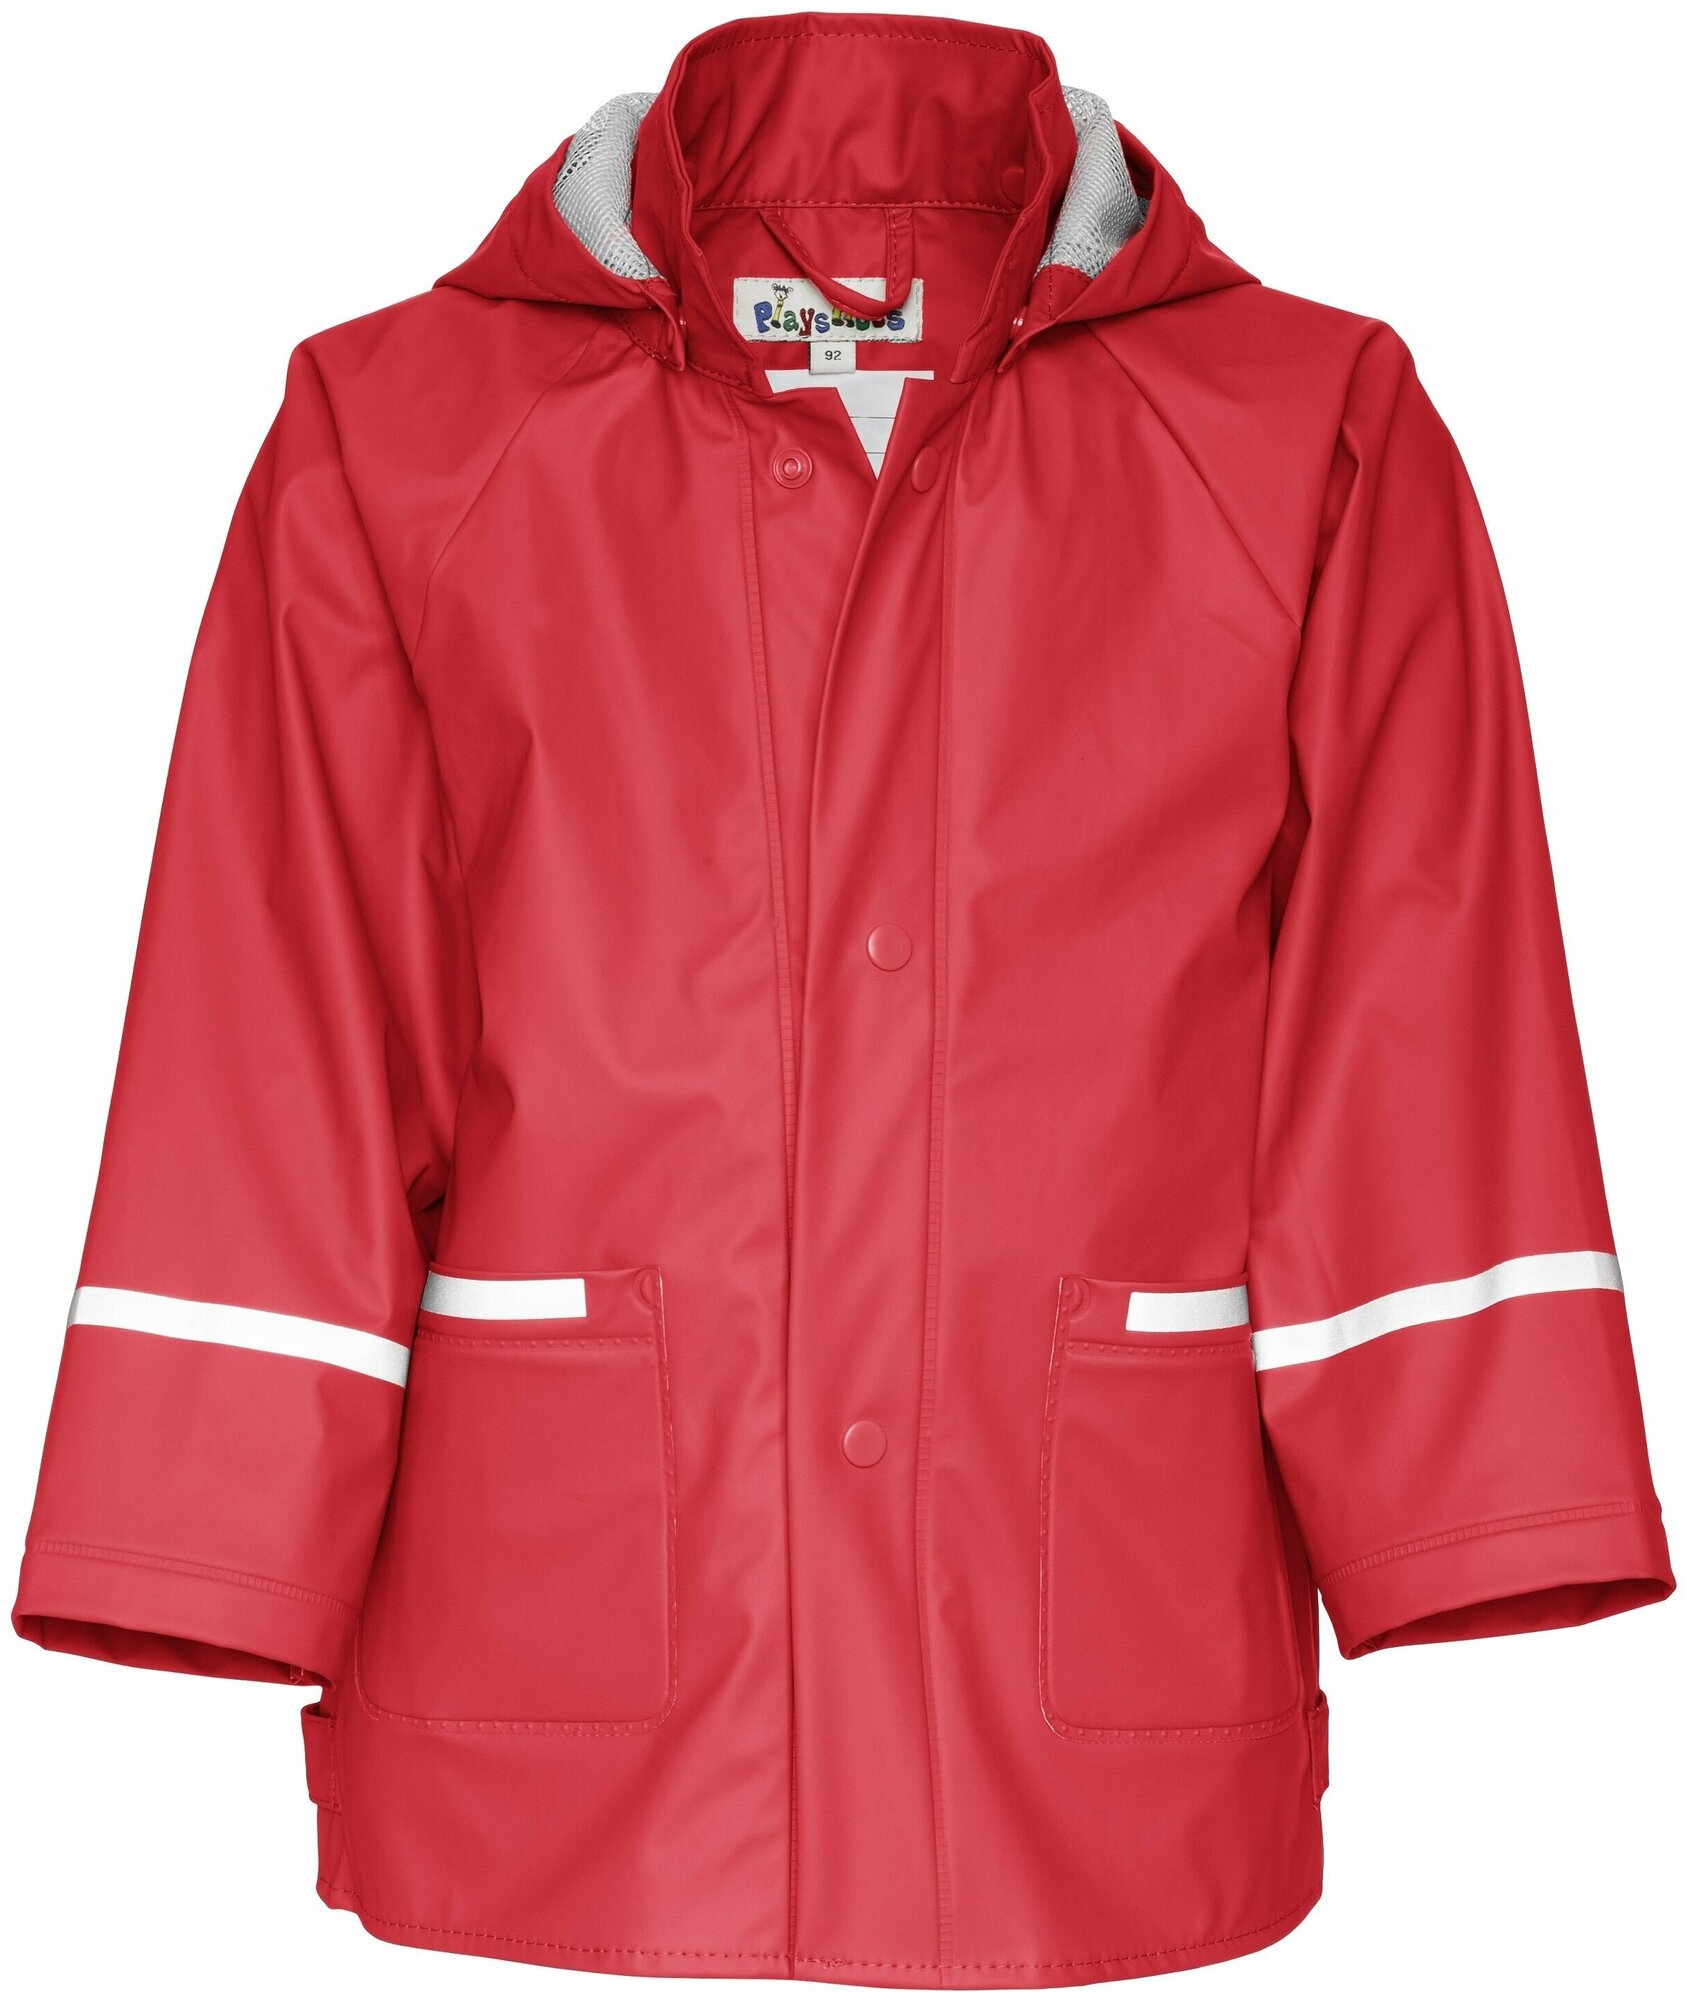 Непромокаемая детская куртка-дождевик Playshoes без подкладки красная